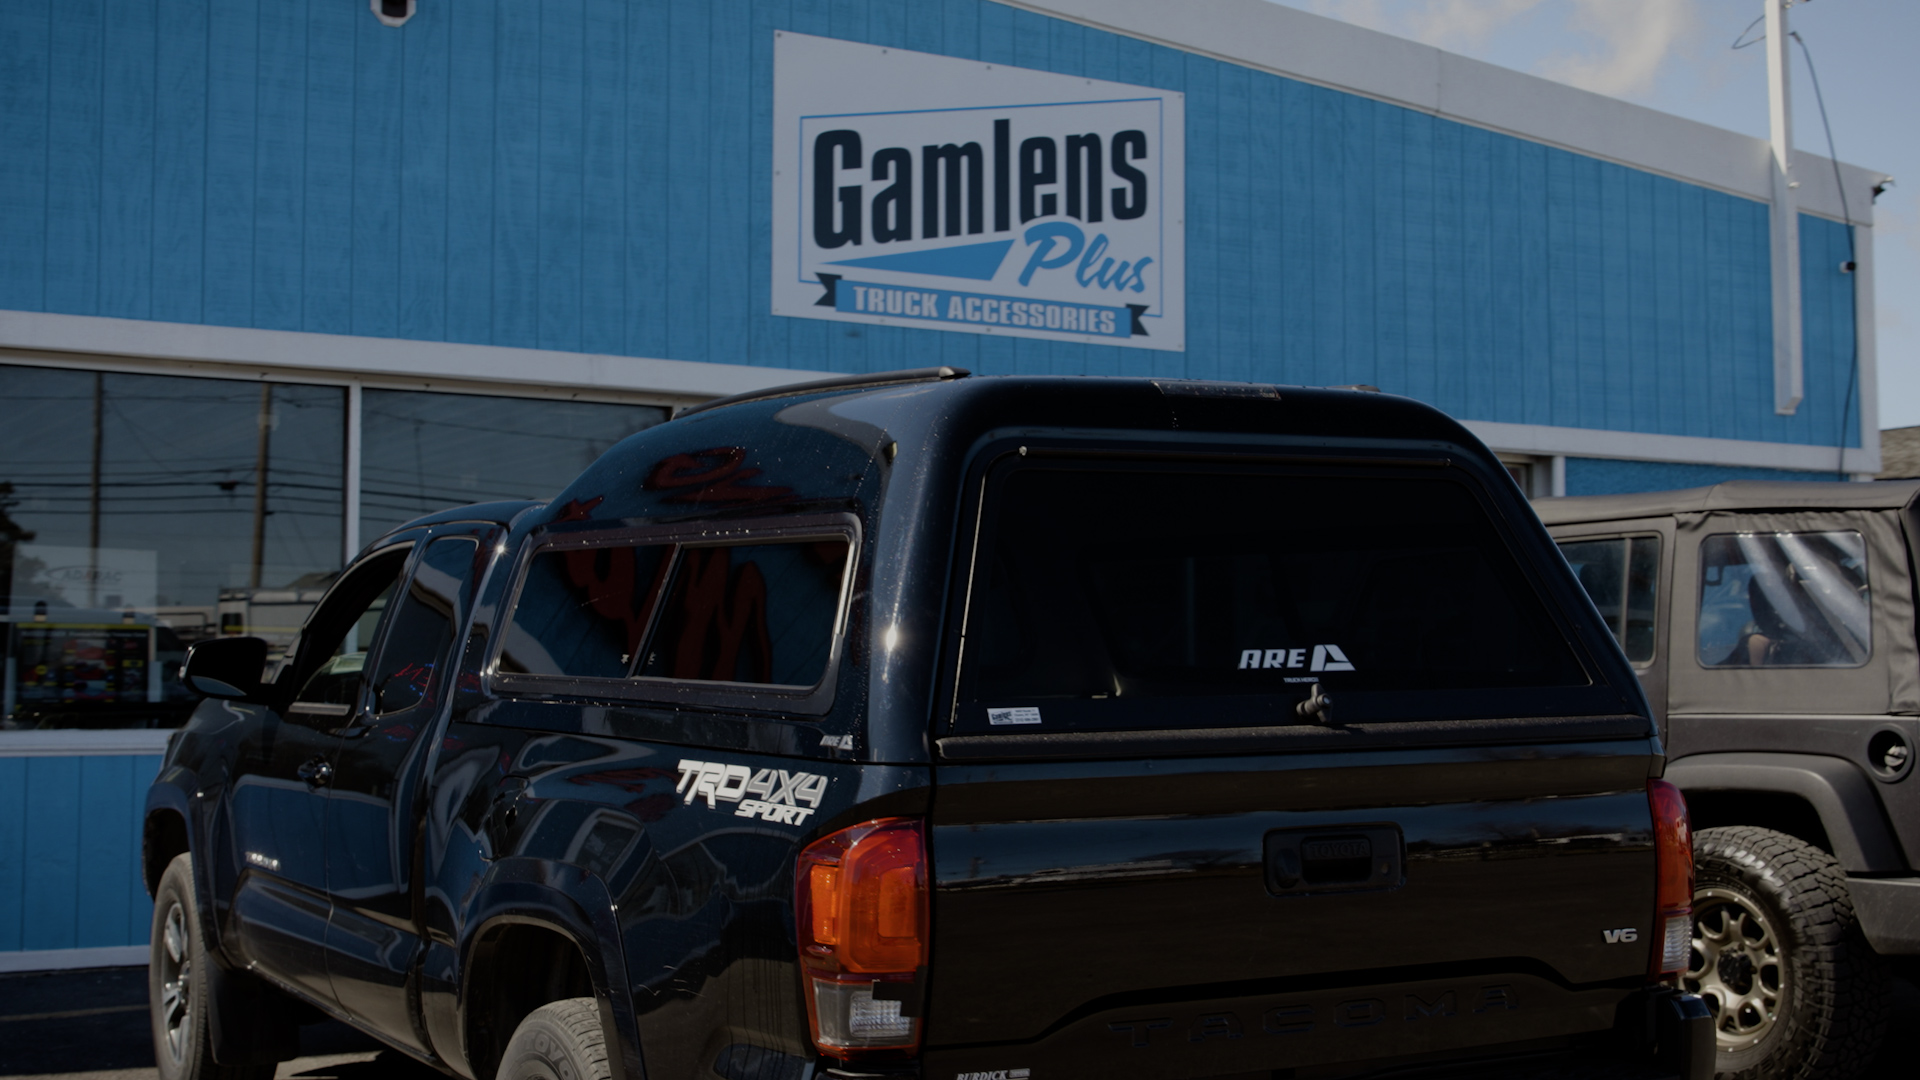 Gamlens Plus, LLC